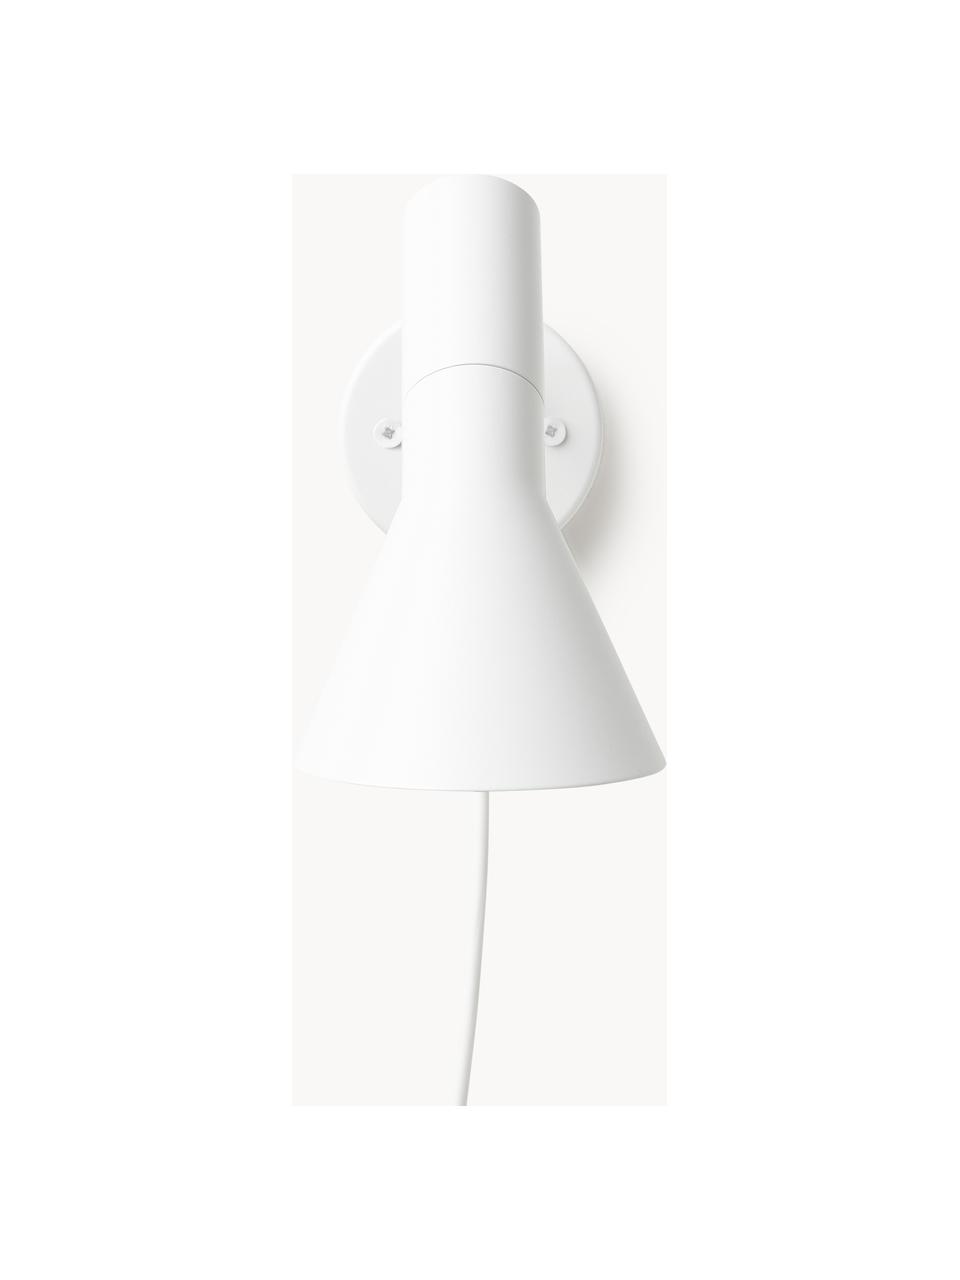 Wandlamp AJ met stekker, Lamp: gecoat staal, Wit, Ø 32 x H 18 cm